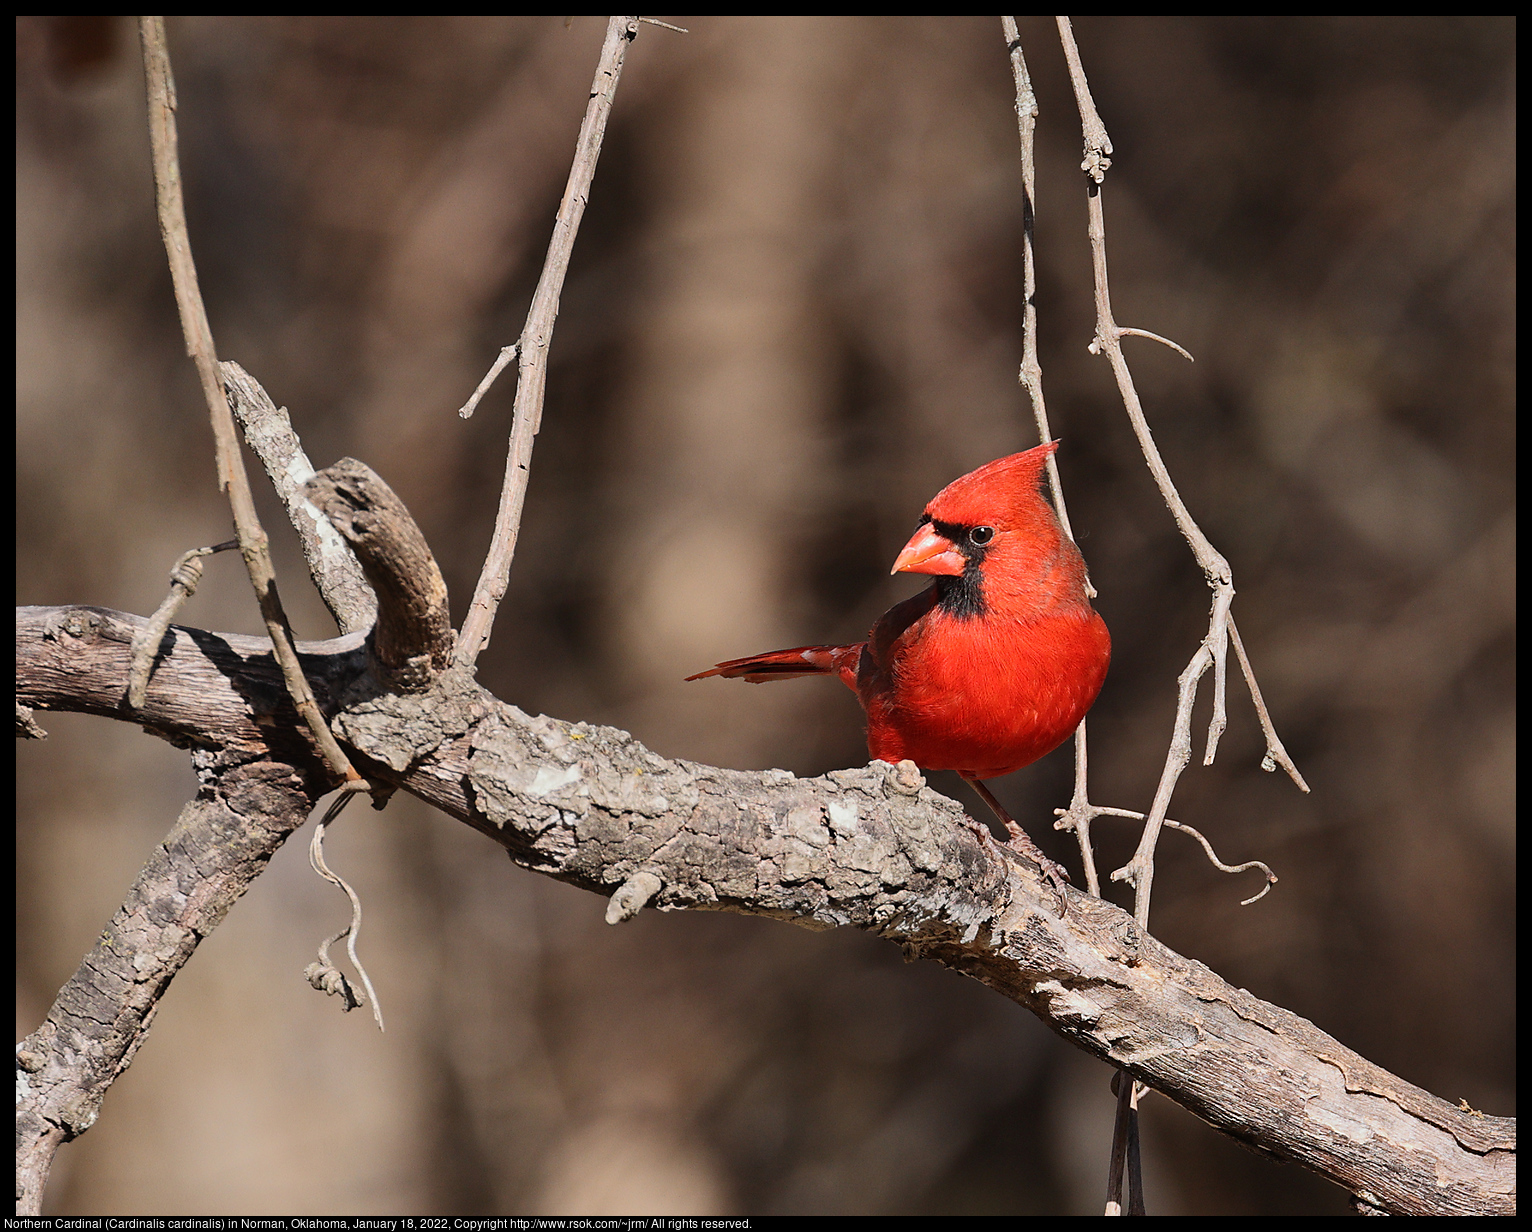 Northern Cardinal (Cardinalis cardinalis) in Norman, Oklahoma, January 18, 2022